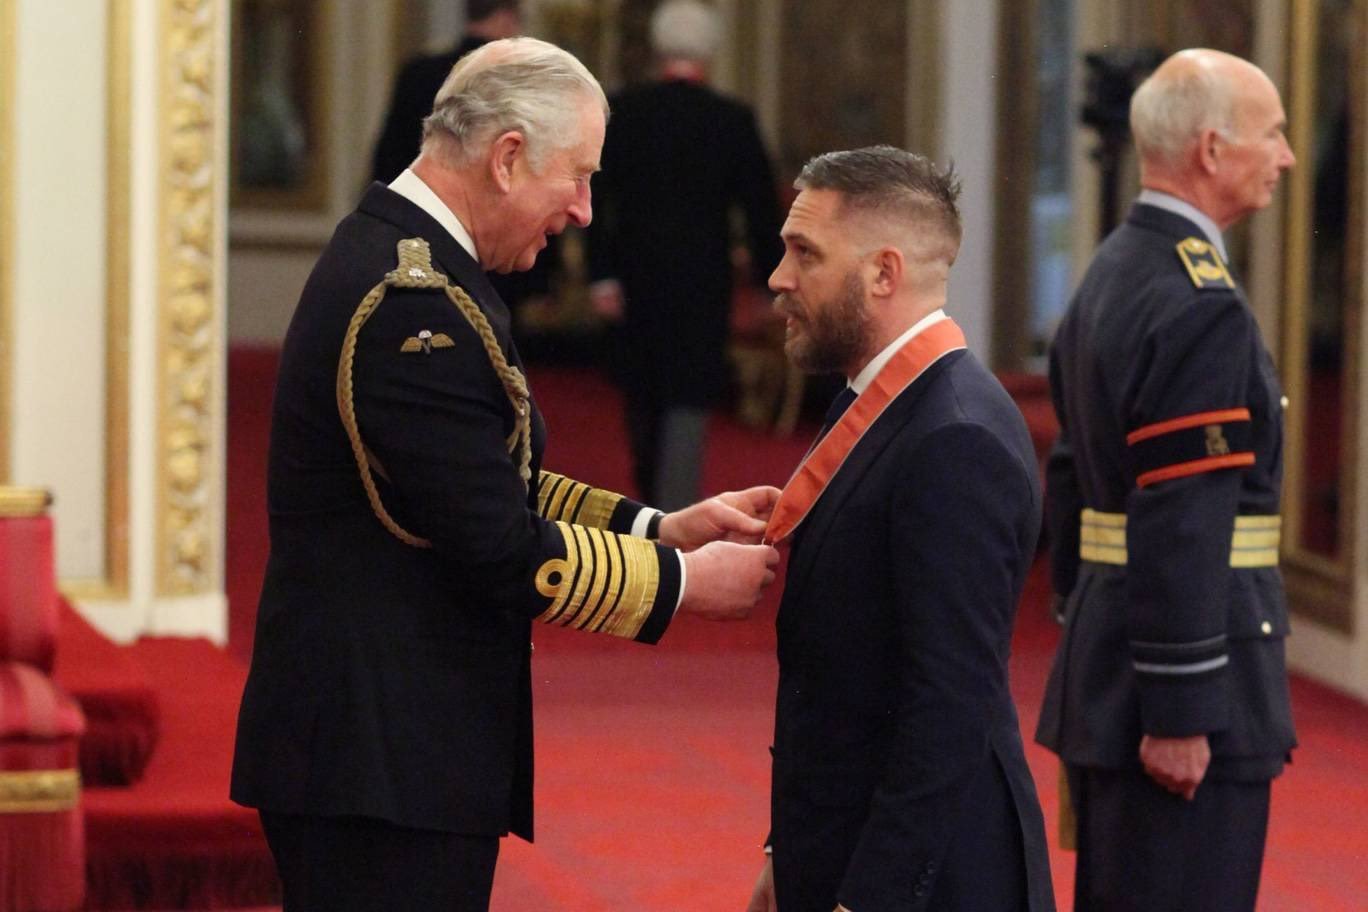 Principe Charles entregando a Tom Hardy uma medalha de Comandante do Empério Britânico.